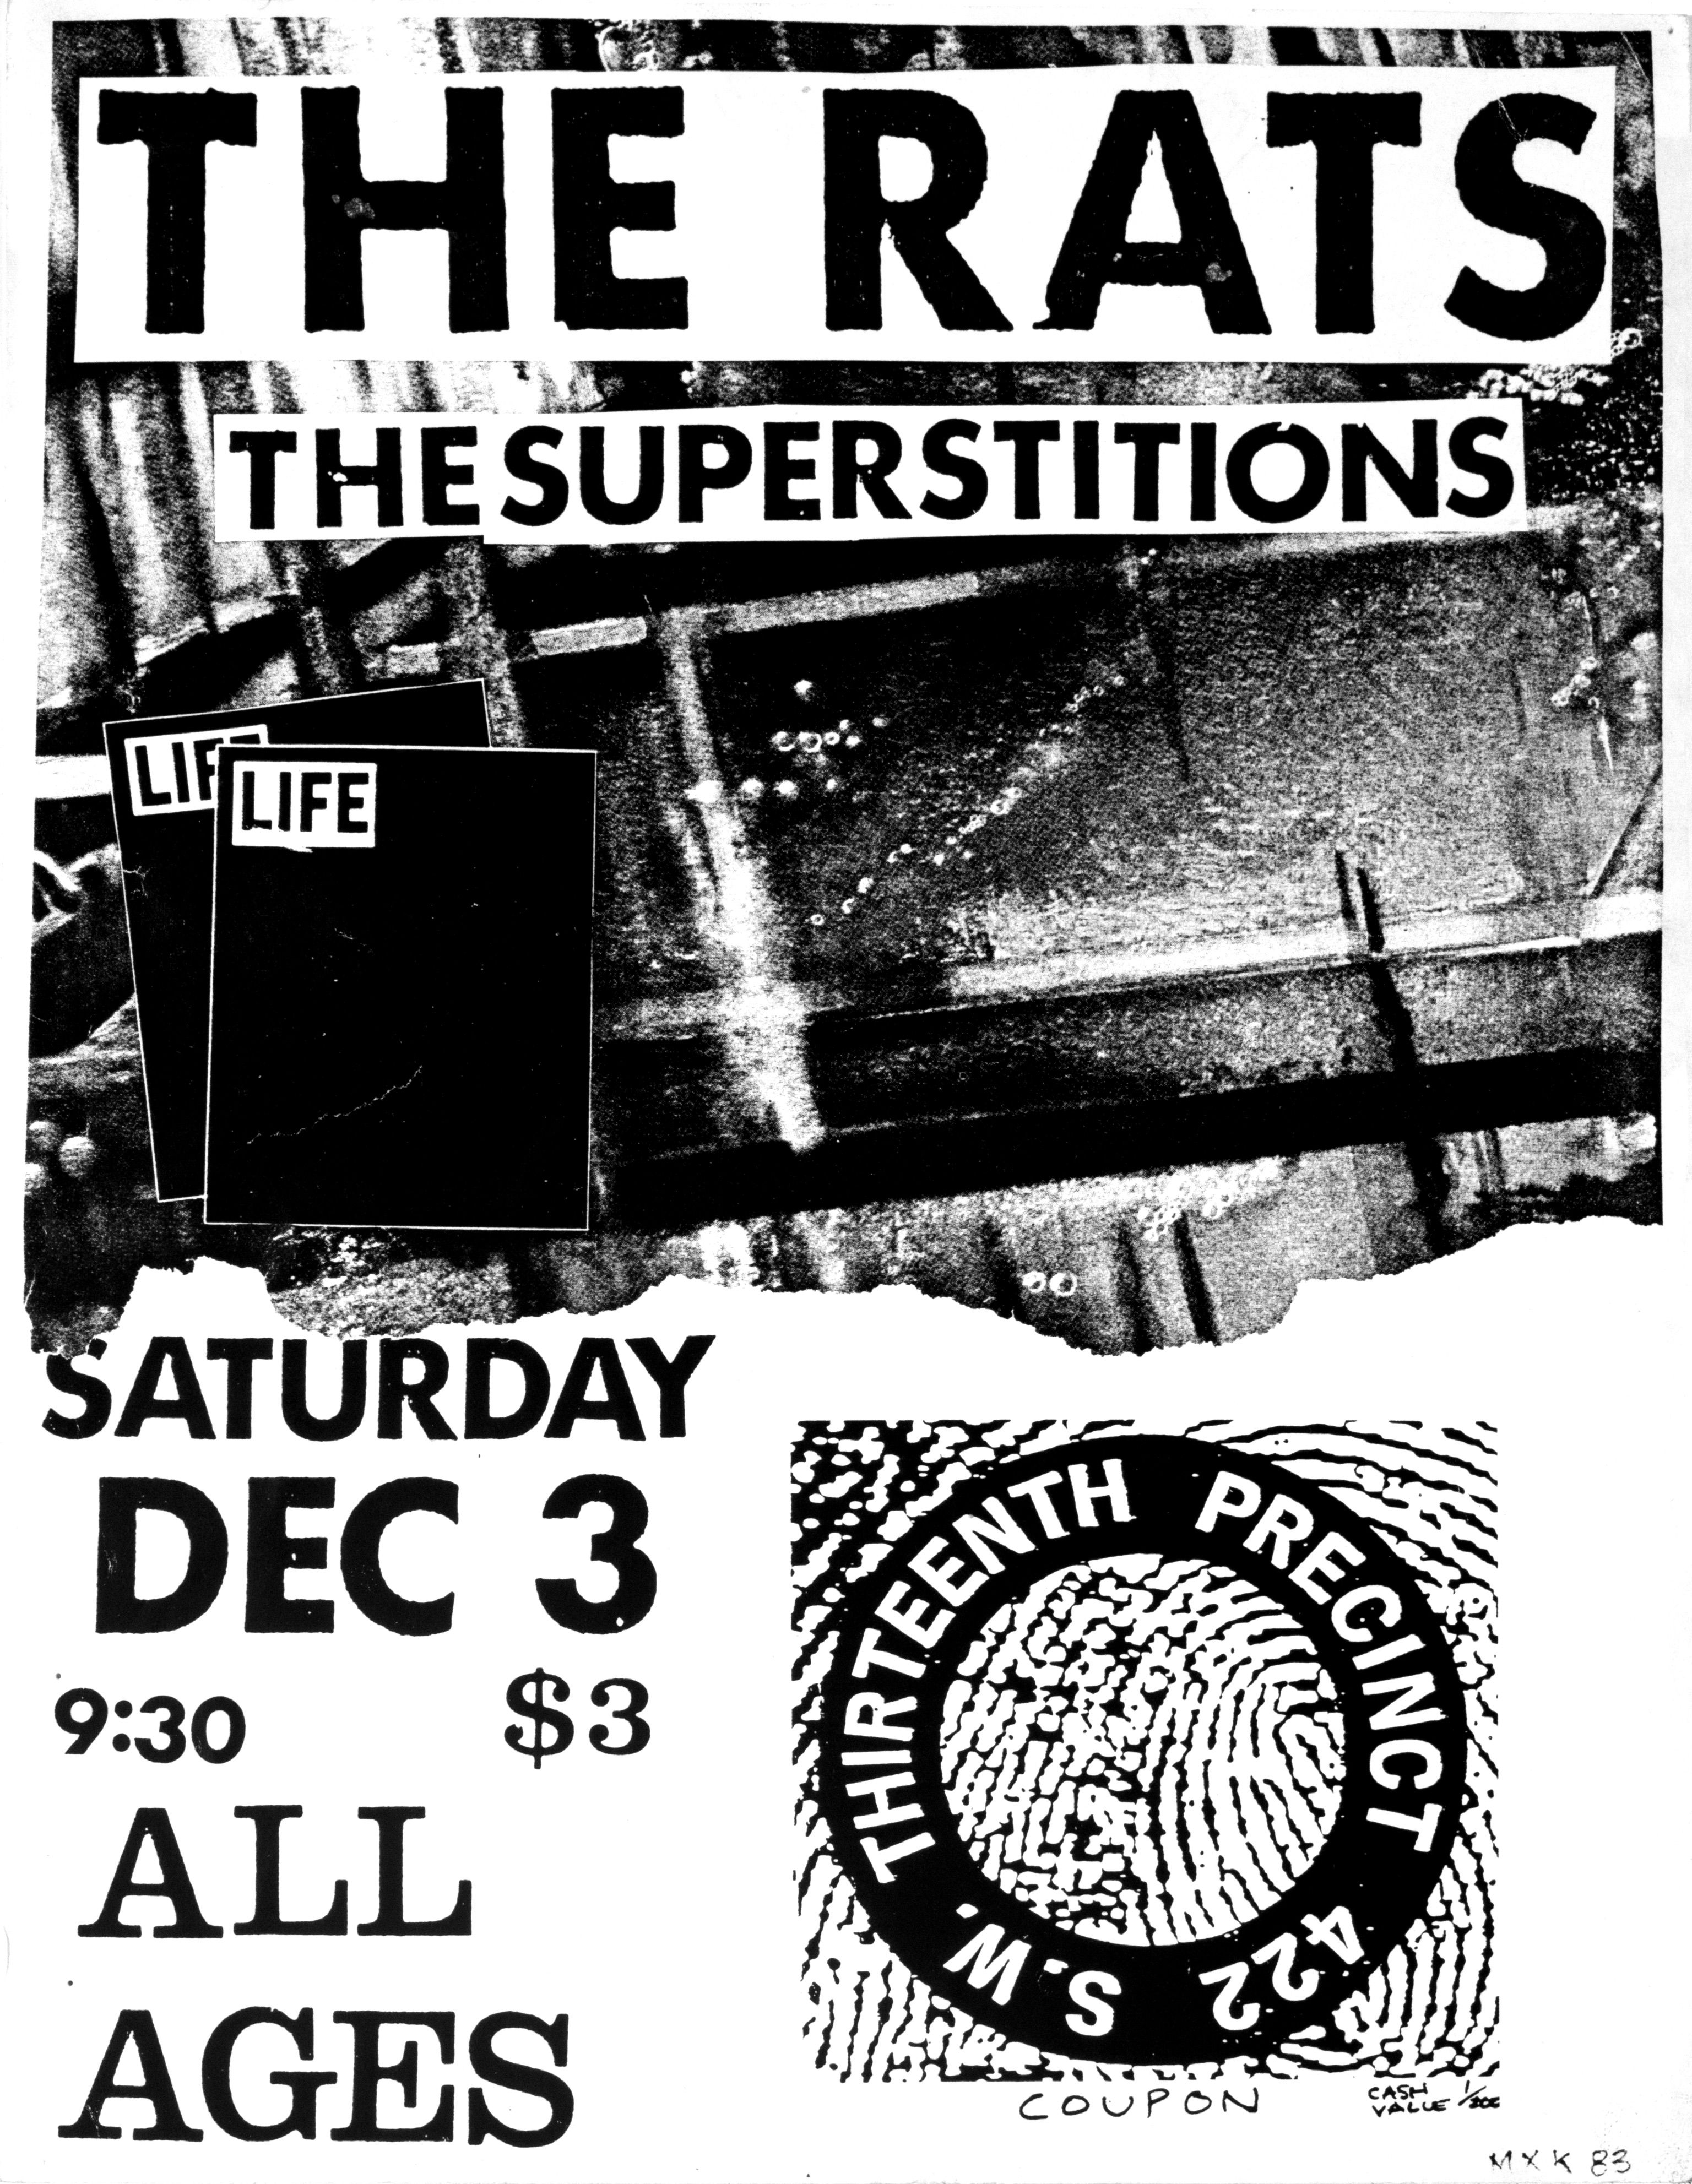 MXP-45.1 Rat$ 1983 13th Precinct  Dec 3 Concert Poster